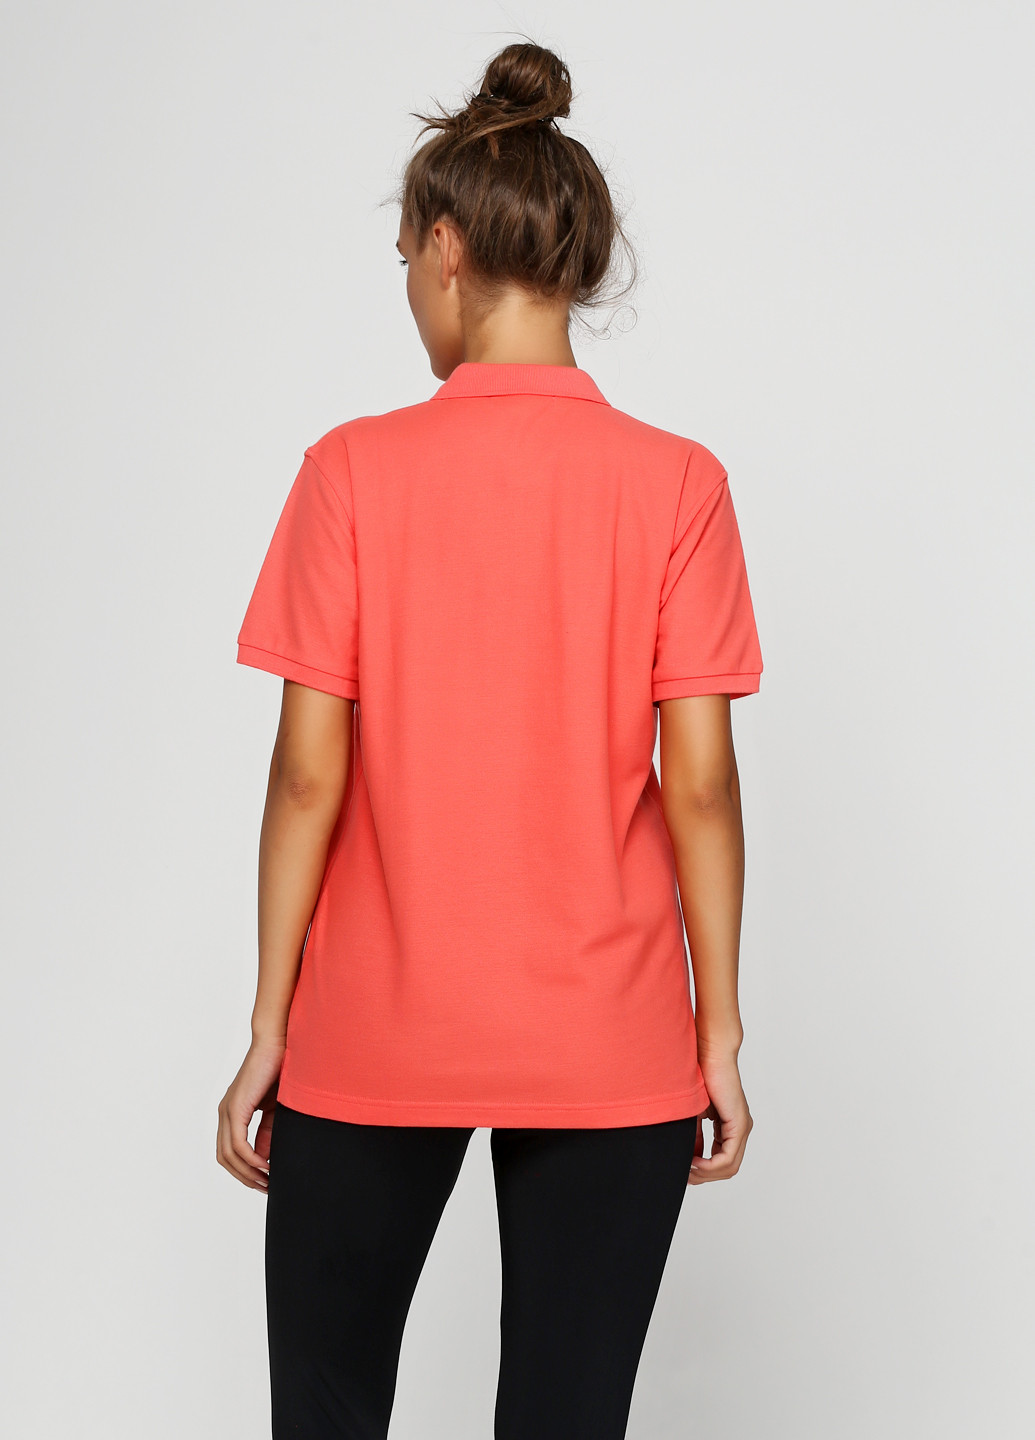 Коралловая женская футболка-поло Port Authority с надписью